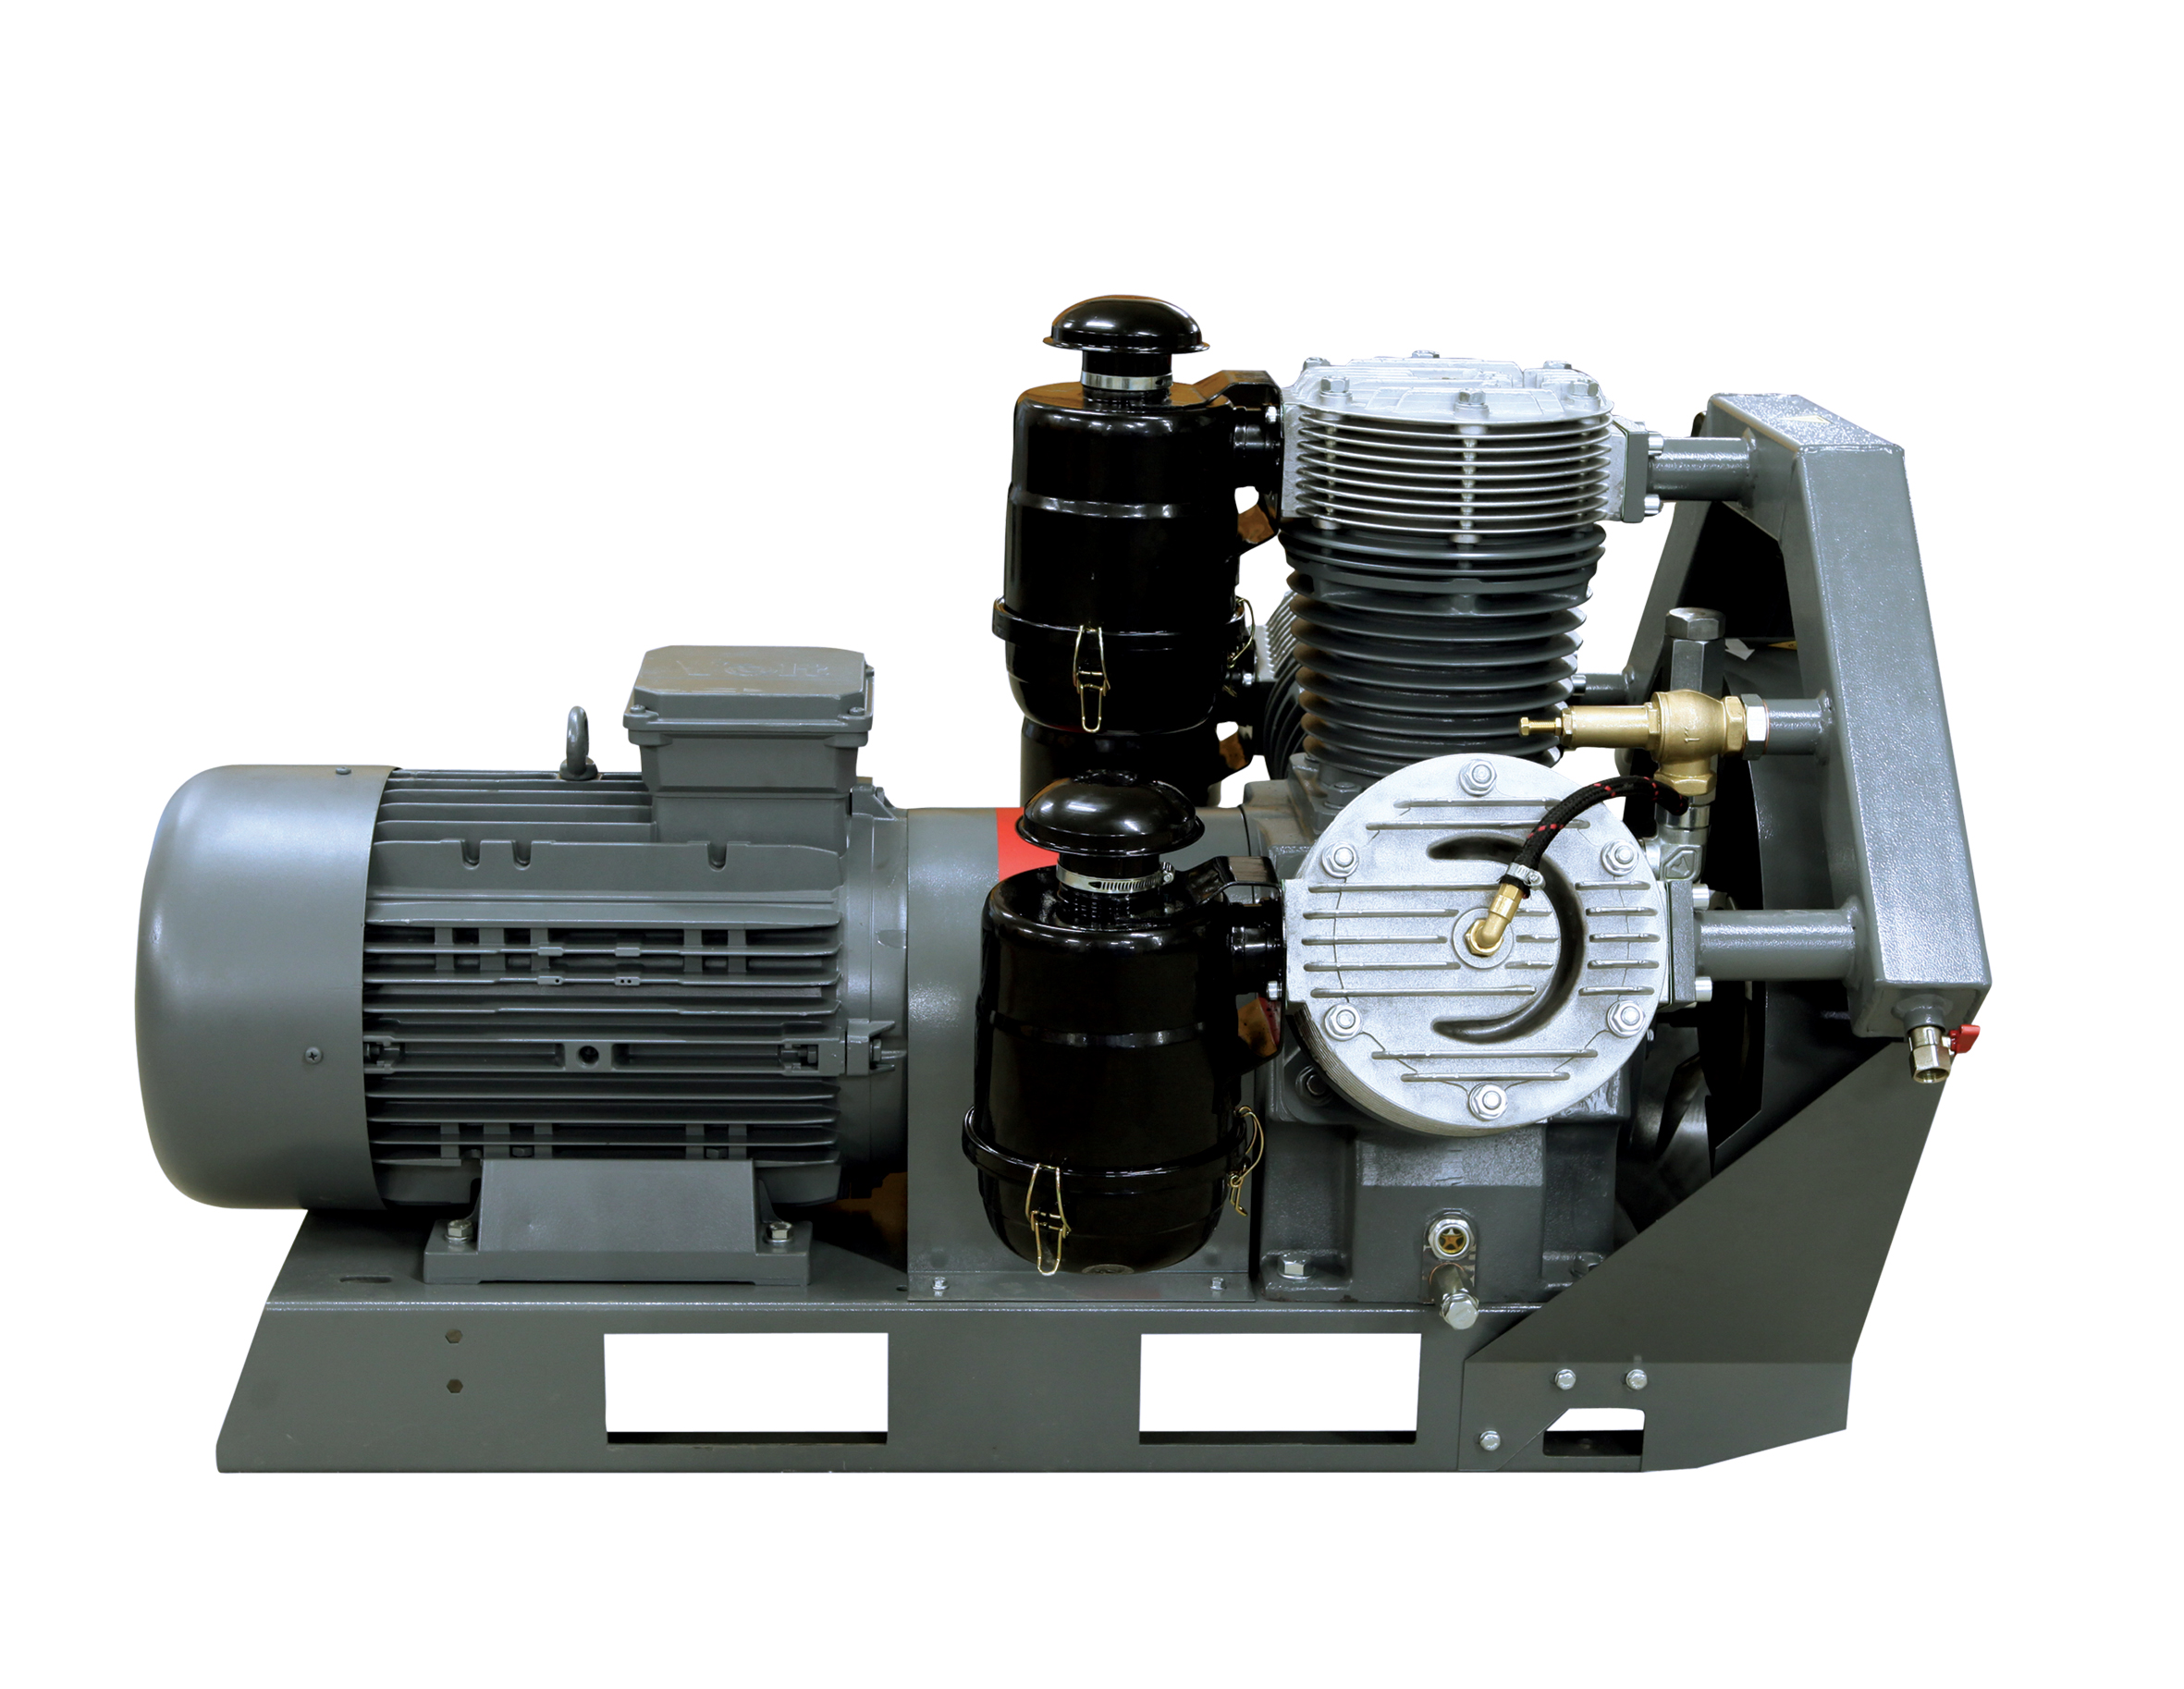 Воздушный поршневой бустерный компрессор высокого давления серии DBK 75